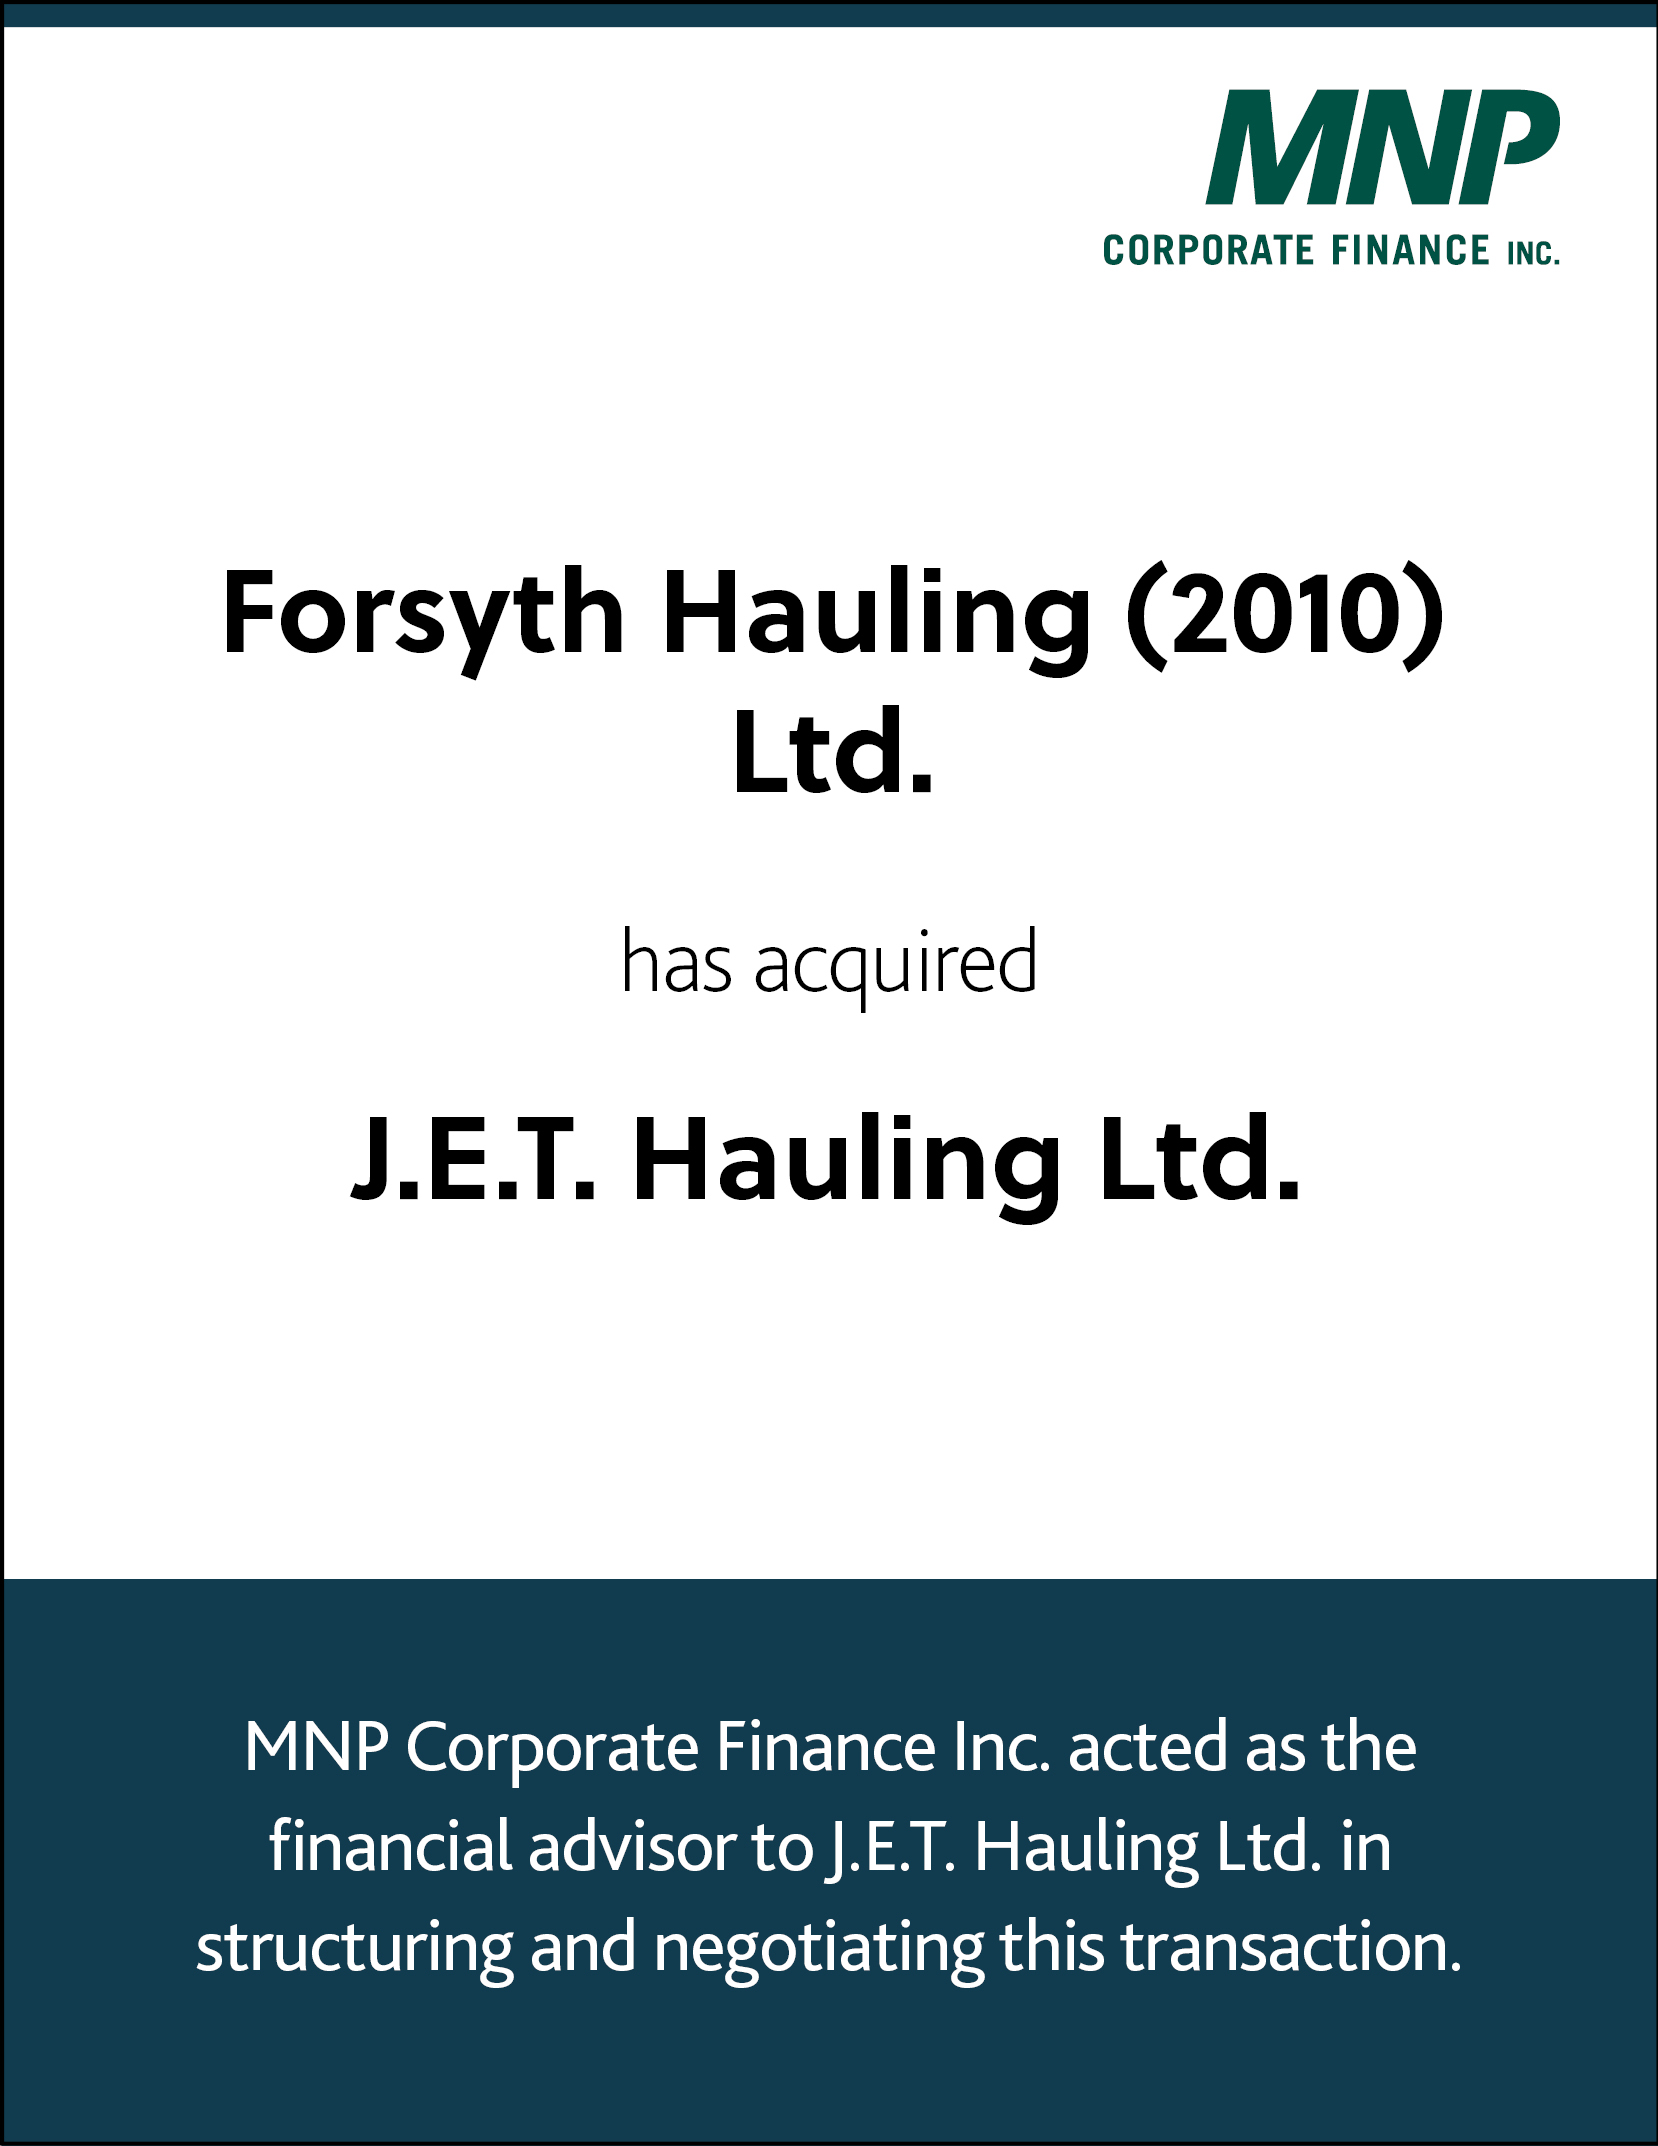 Forsyth Hauling (2010) Ltd. has acquired J.E.T. Hauling Ltd.